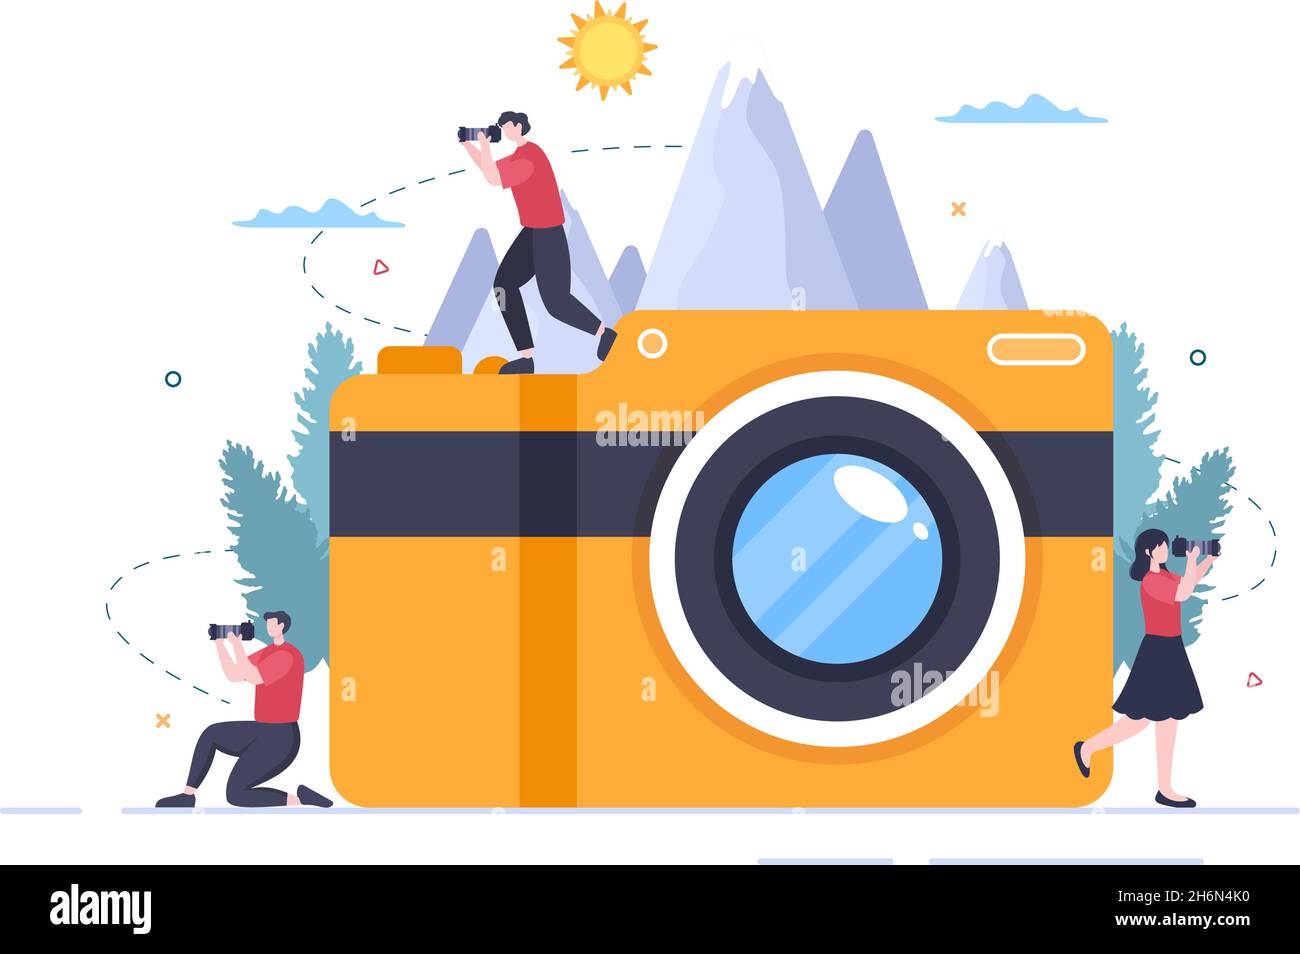 Fotograf Flat Design Hintergrund mit Kamera, Digital Film Equipment Technology und Picture Person in Cartoon Style Vektor Illustration Stock Vektor